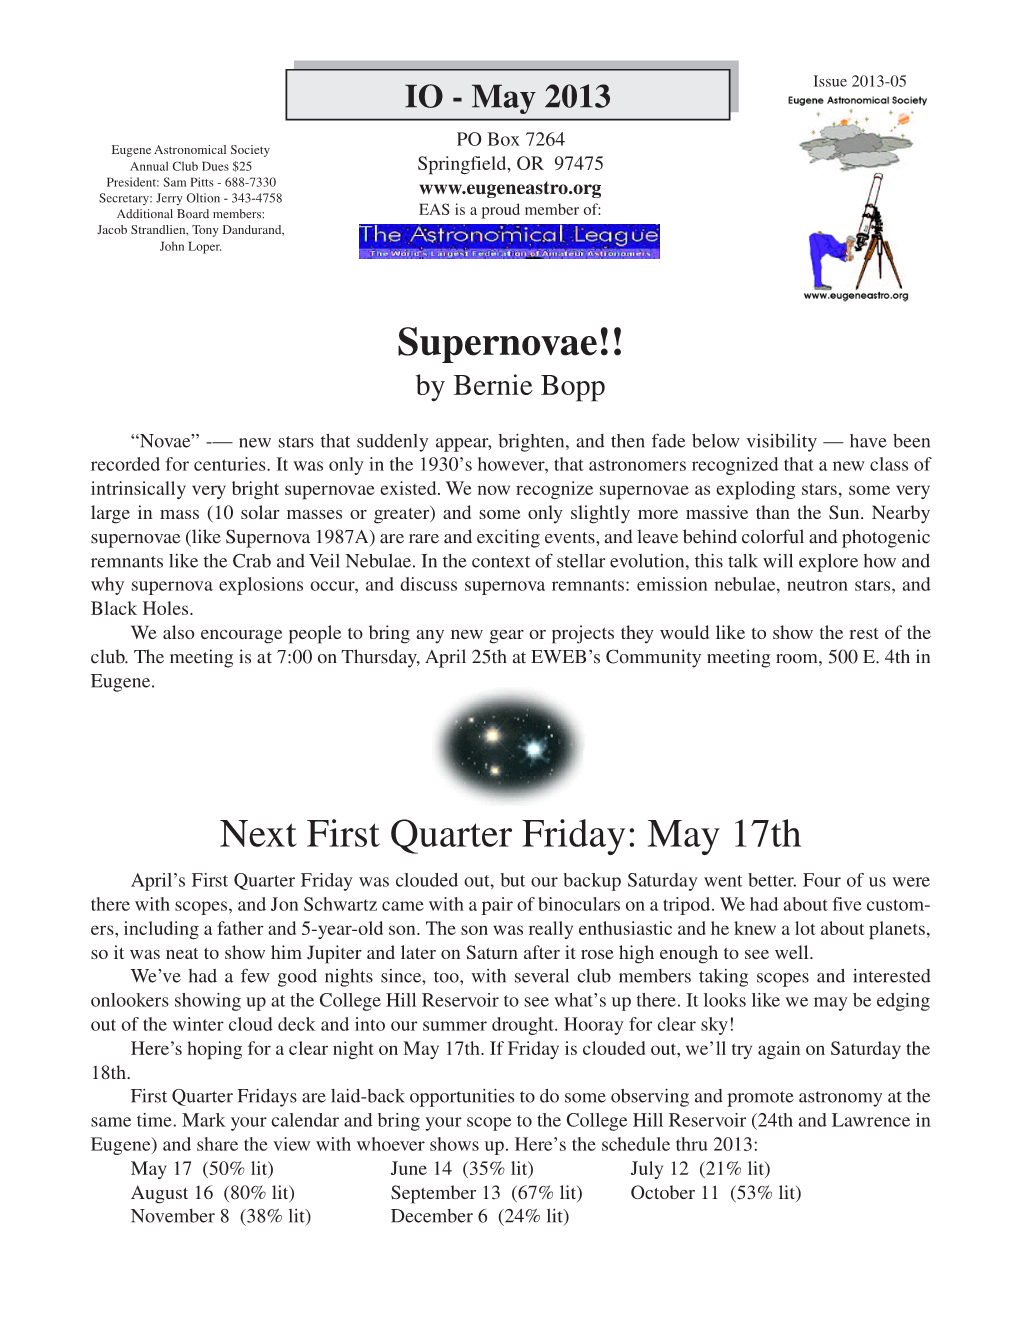 May 17Th Supernovae!!